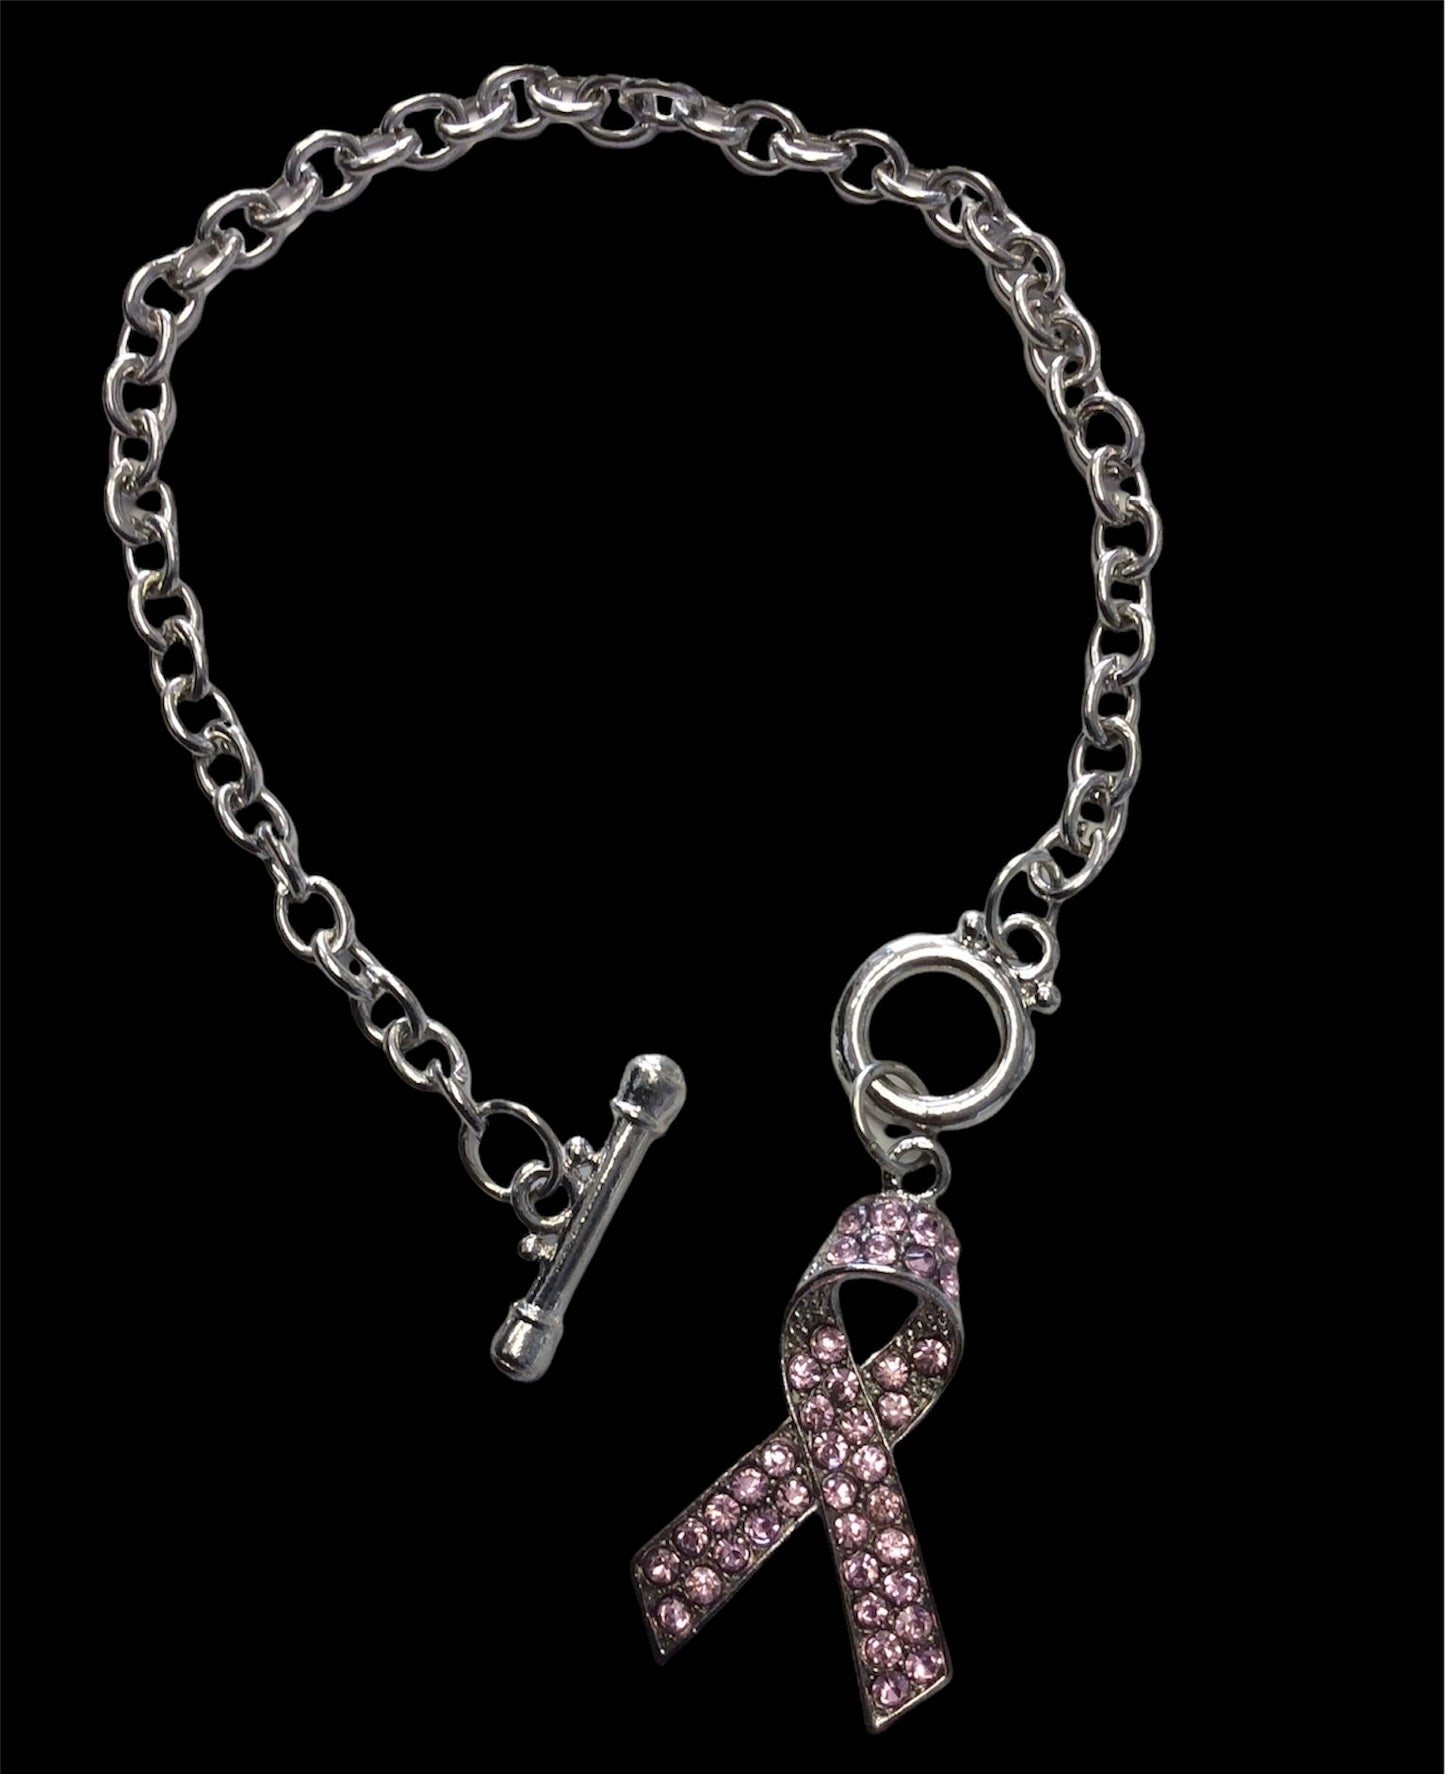 Pink Ribbon Bracelet